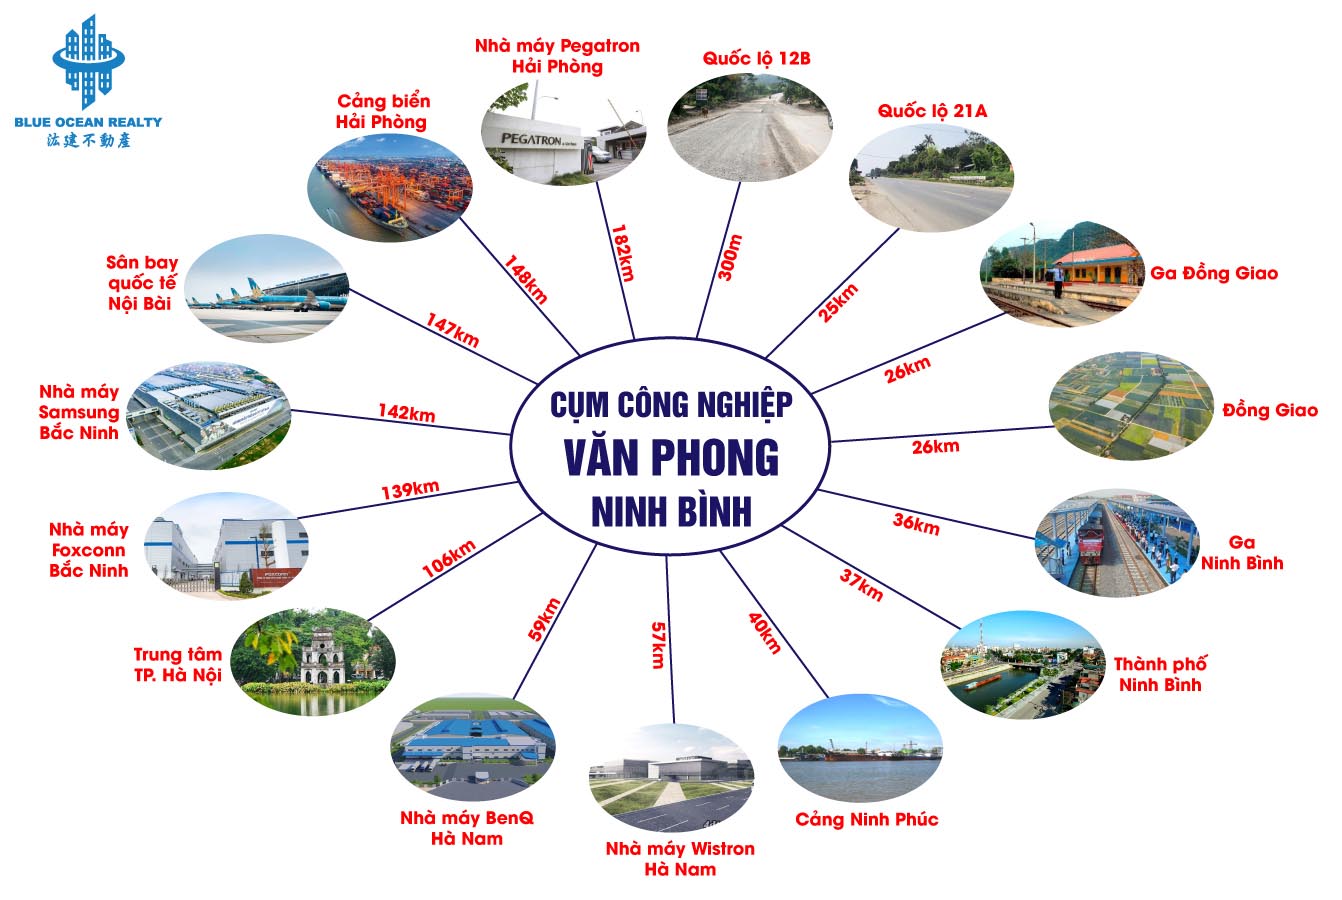 Cụm công nghiệp (CCN) Văn Phong- Ninh Bình